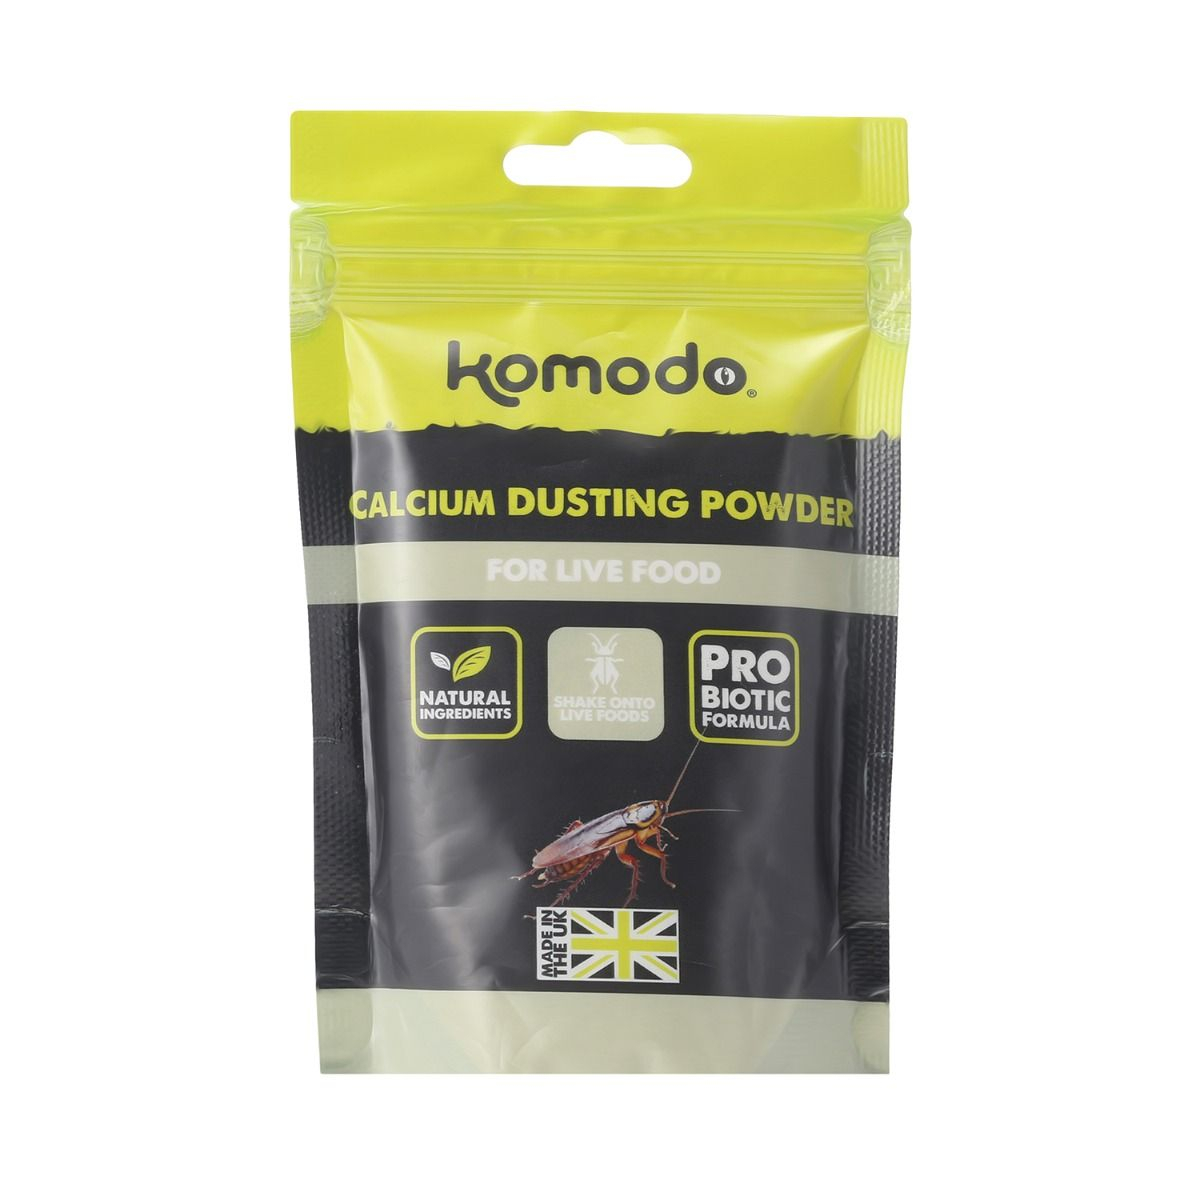 Komodo Complemento alimentario a base de carbonato de calcio - 200g